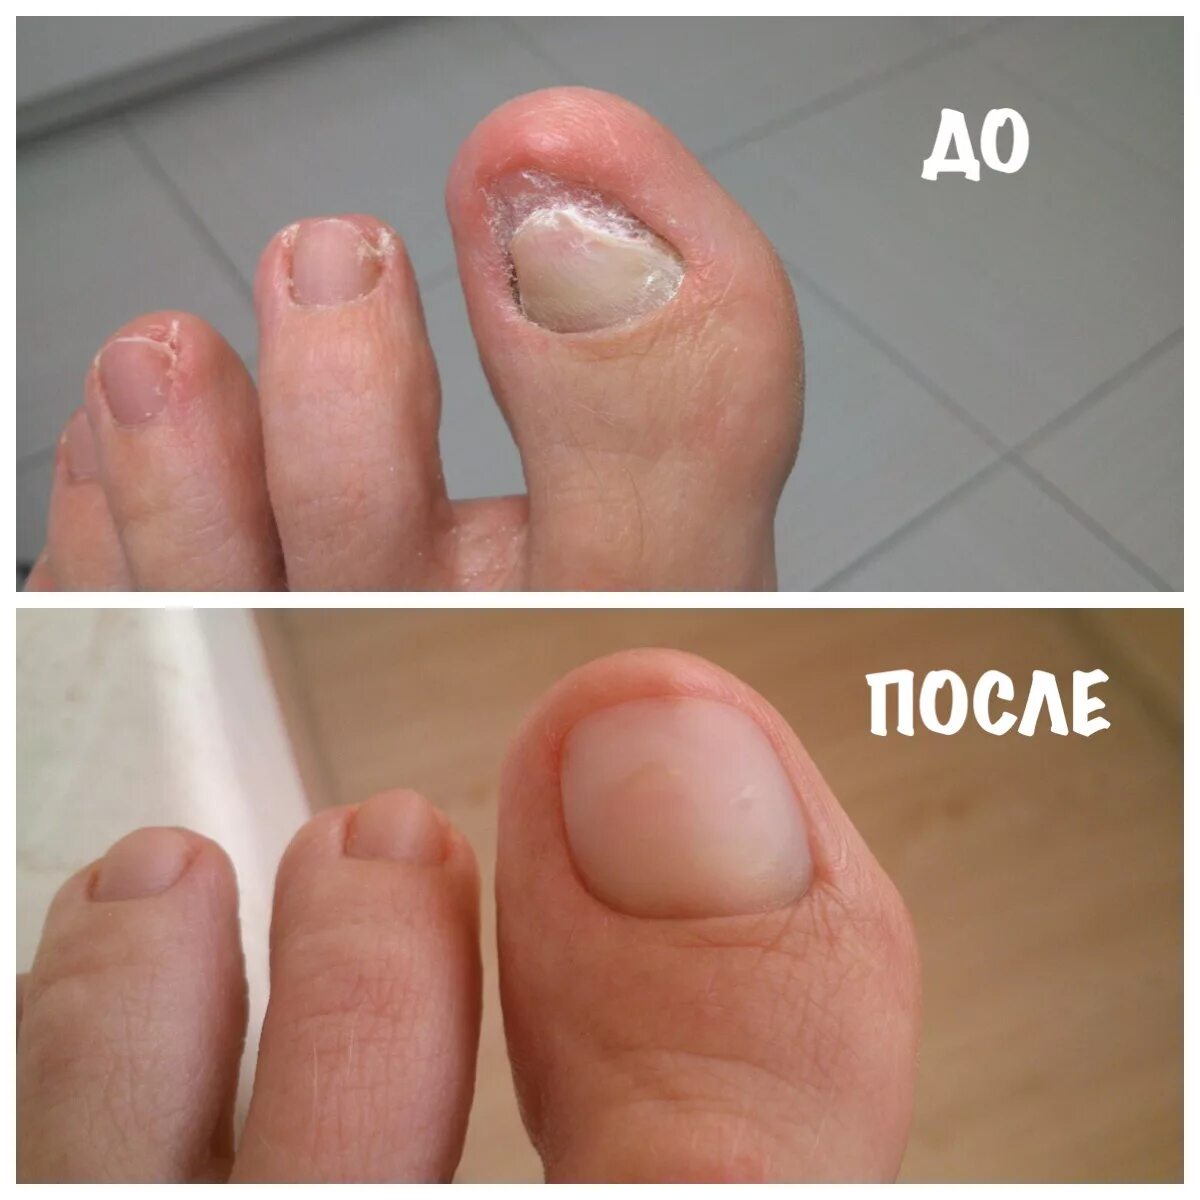 Ногти делают больно. Ониходистрофия - онихолизис.. Протезирование ногтей на ногах. Протезирование ногтевой пластины на ногах.